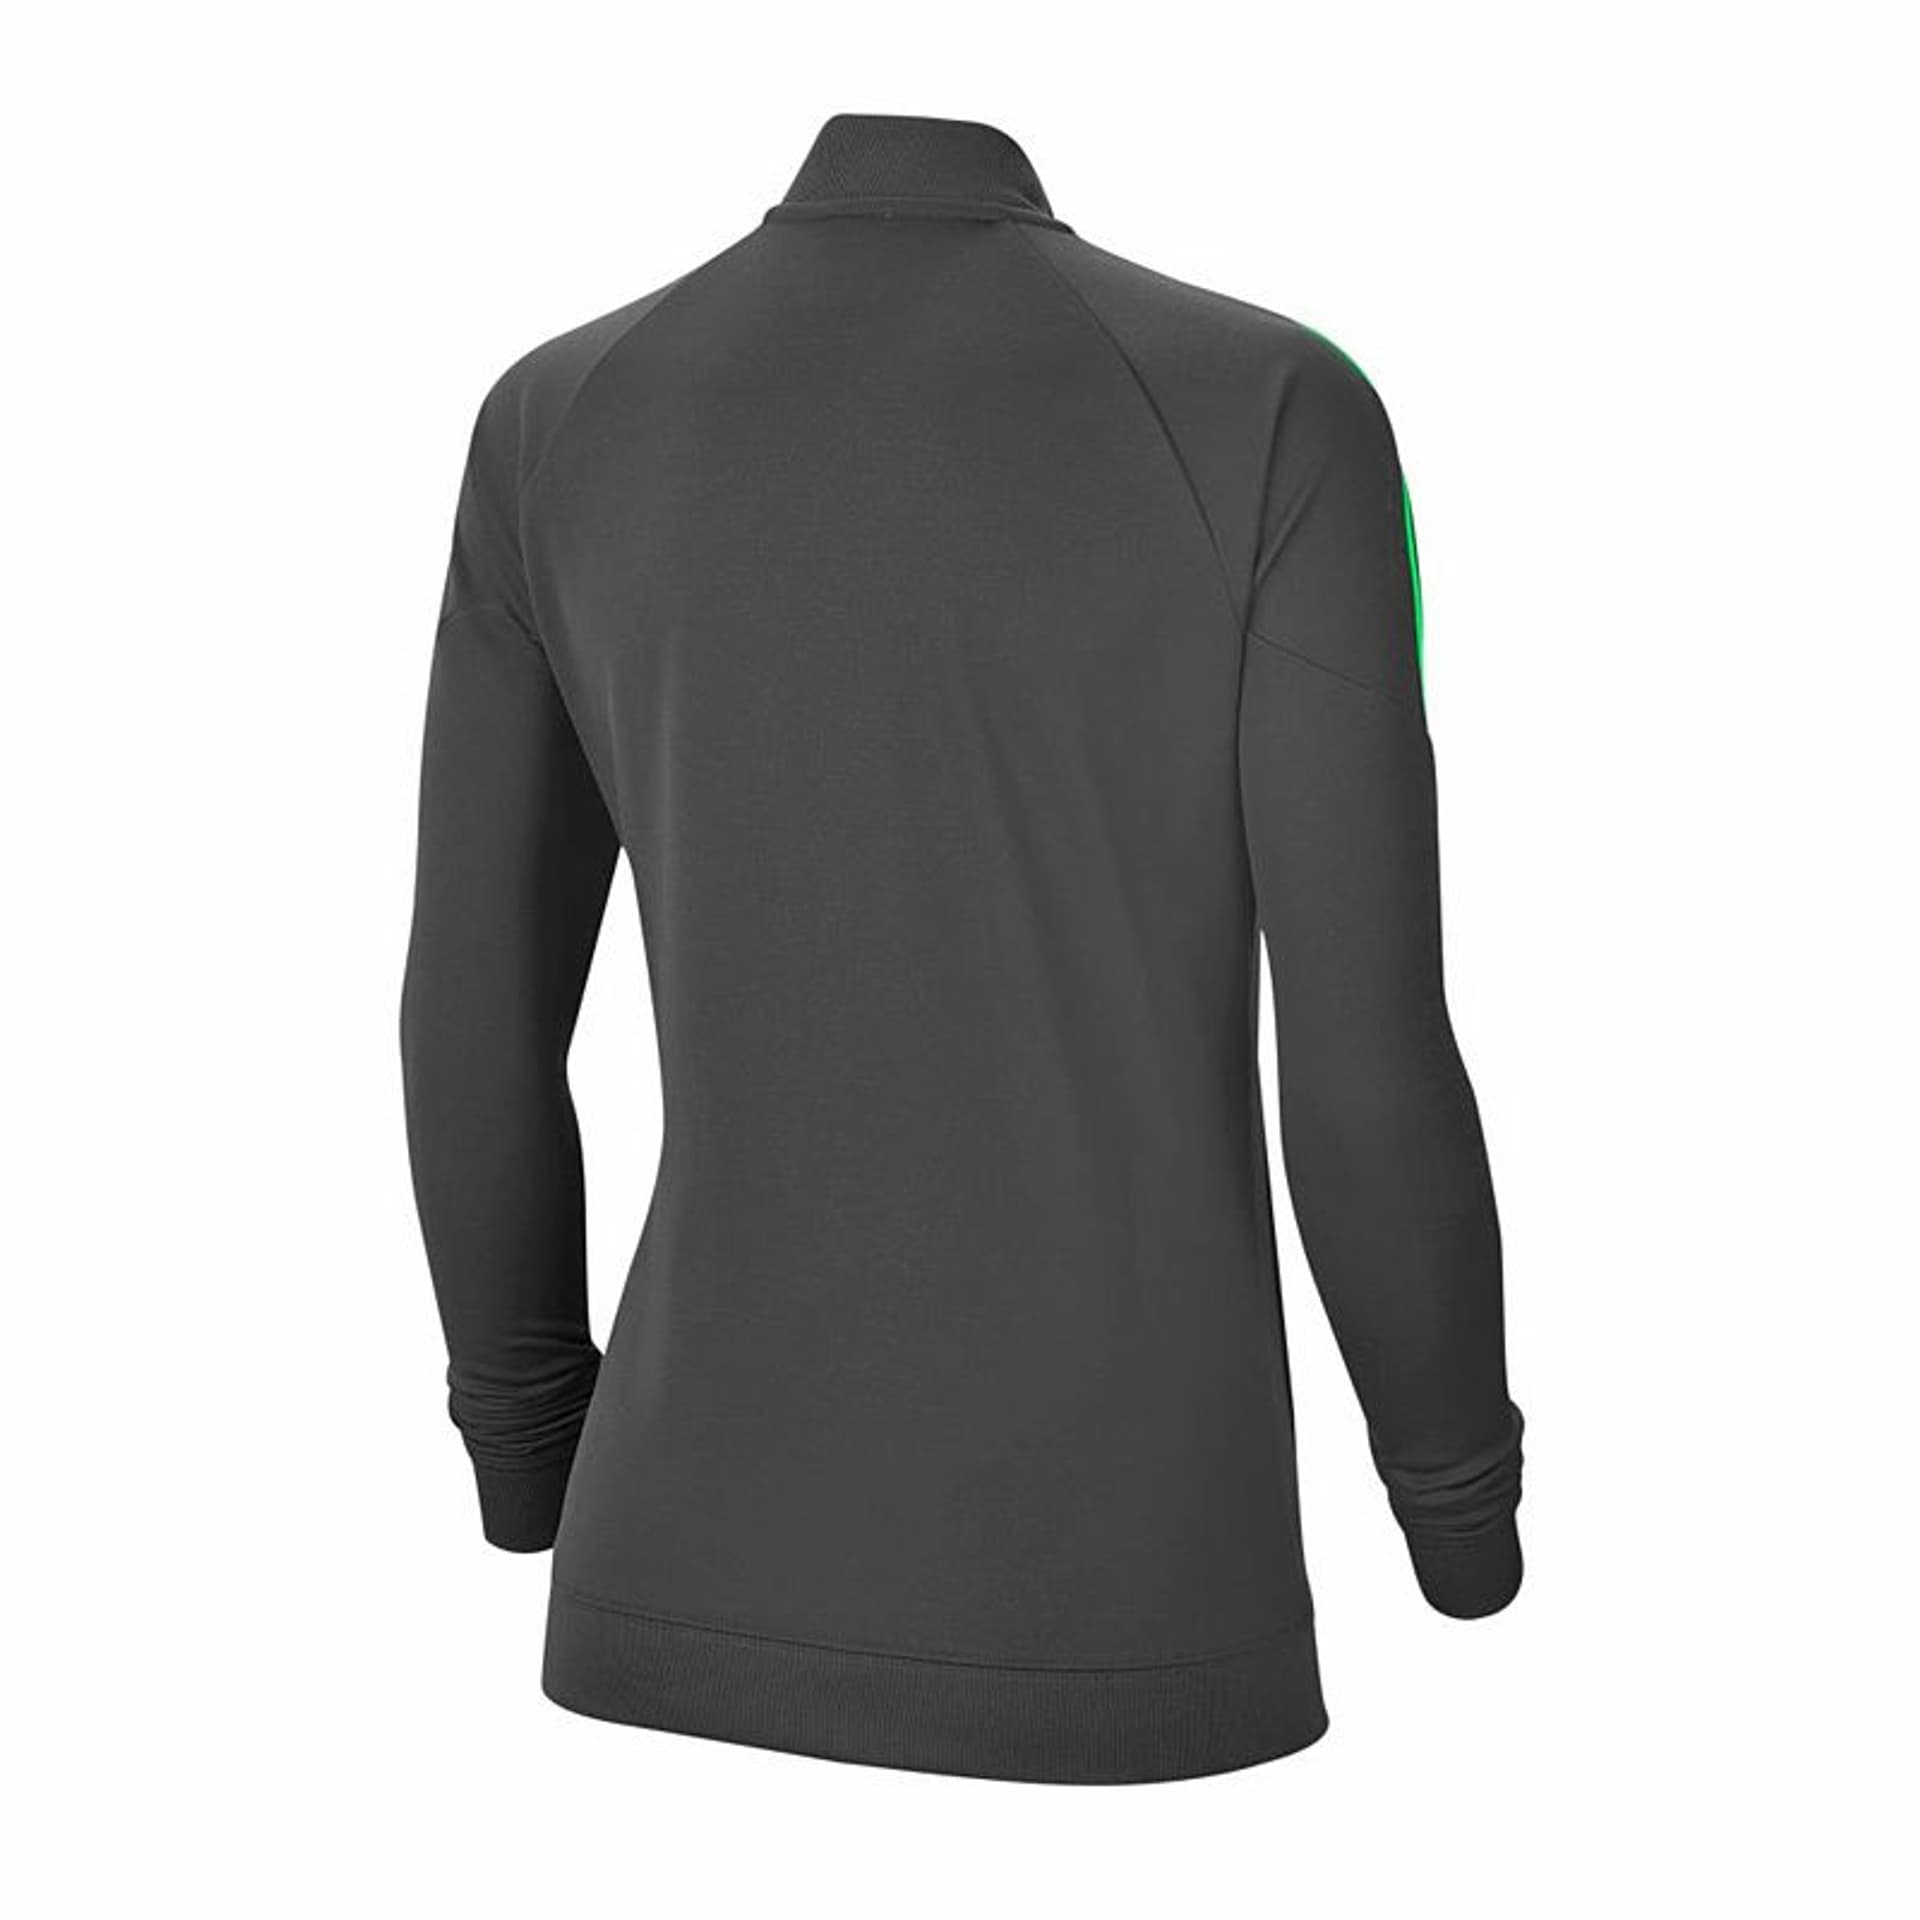 

Bluza Nike Dry Academy Pro W BV6932 (kolor Zielony. Grafitowy, rozmiar M)